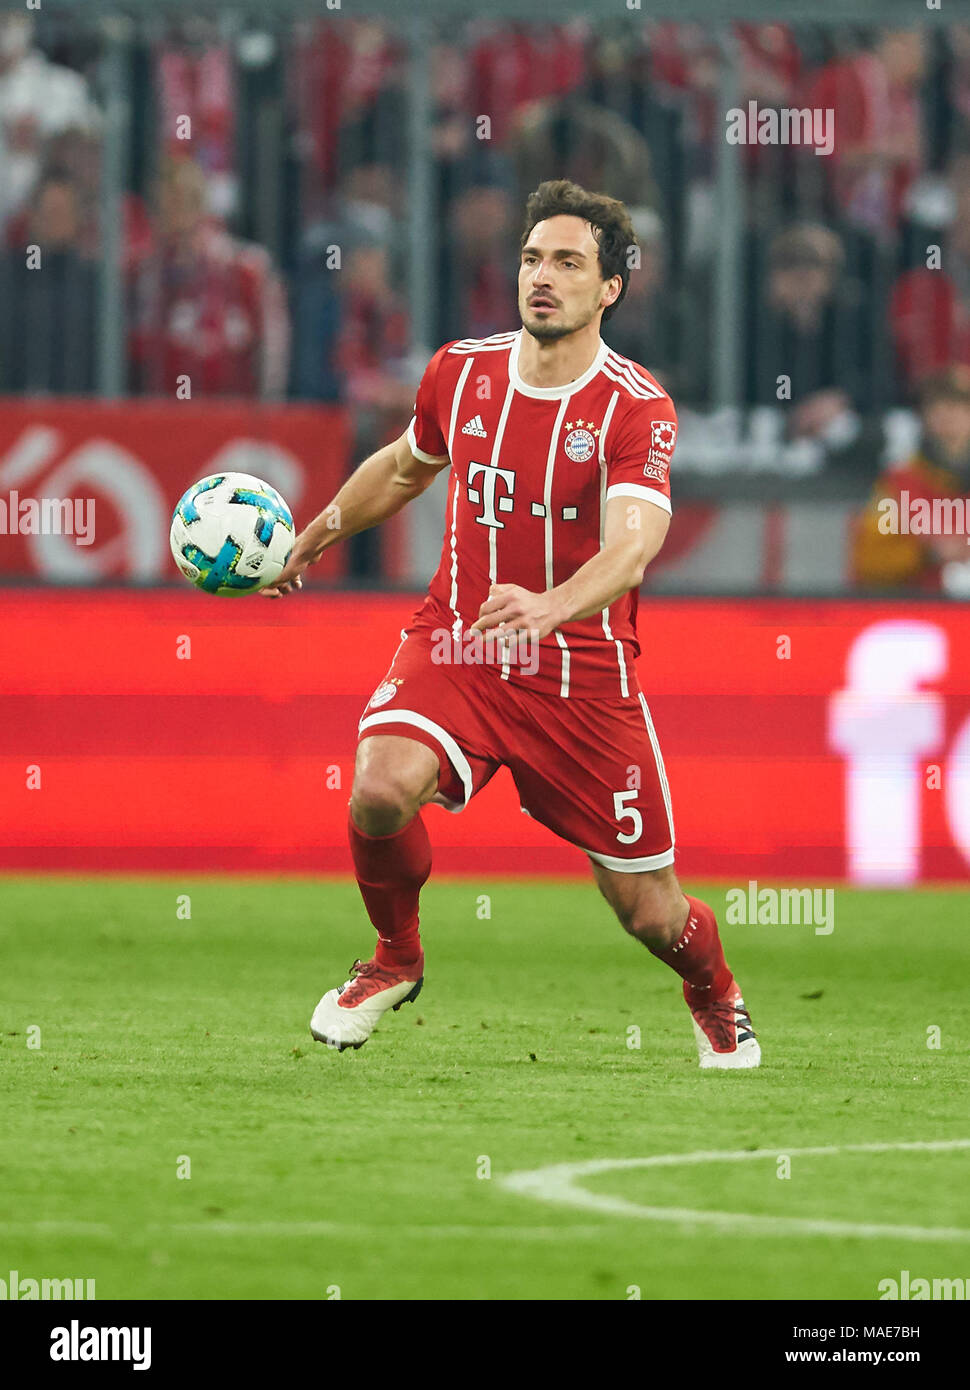 FC Bayern Munich Soccer, Munich, March 31, 2018 Mats HUMMELS, FCB 5 drives  the ball, action,